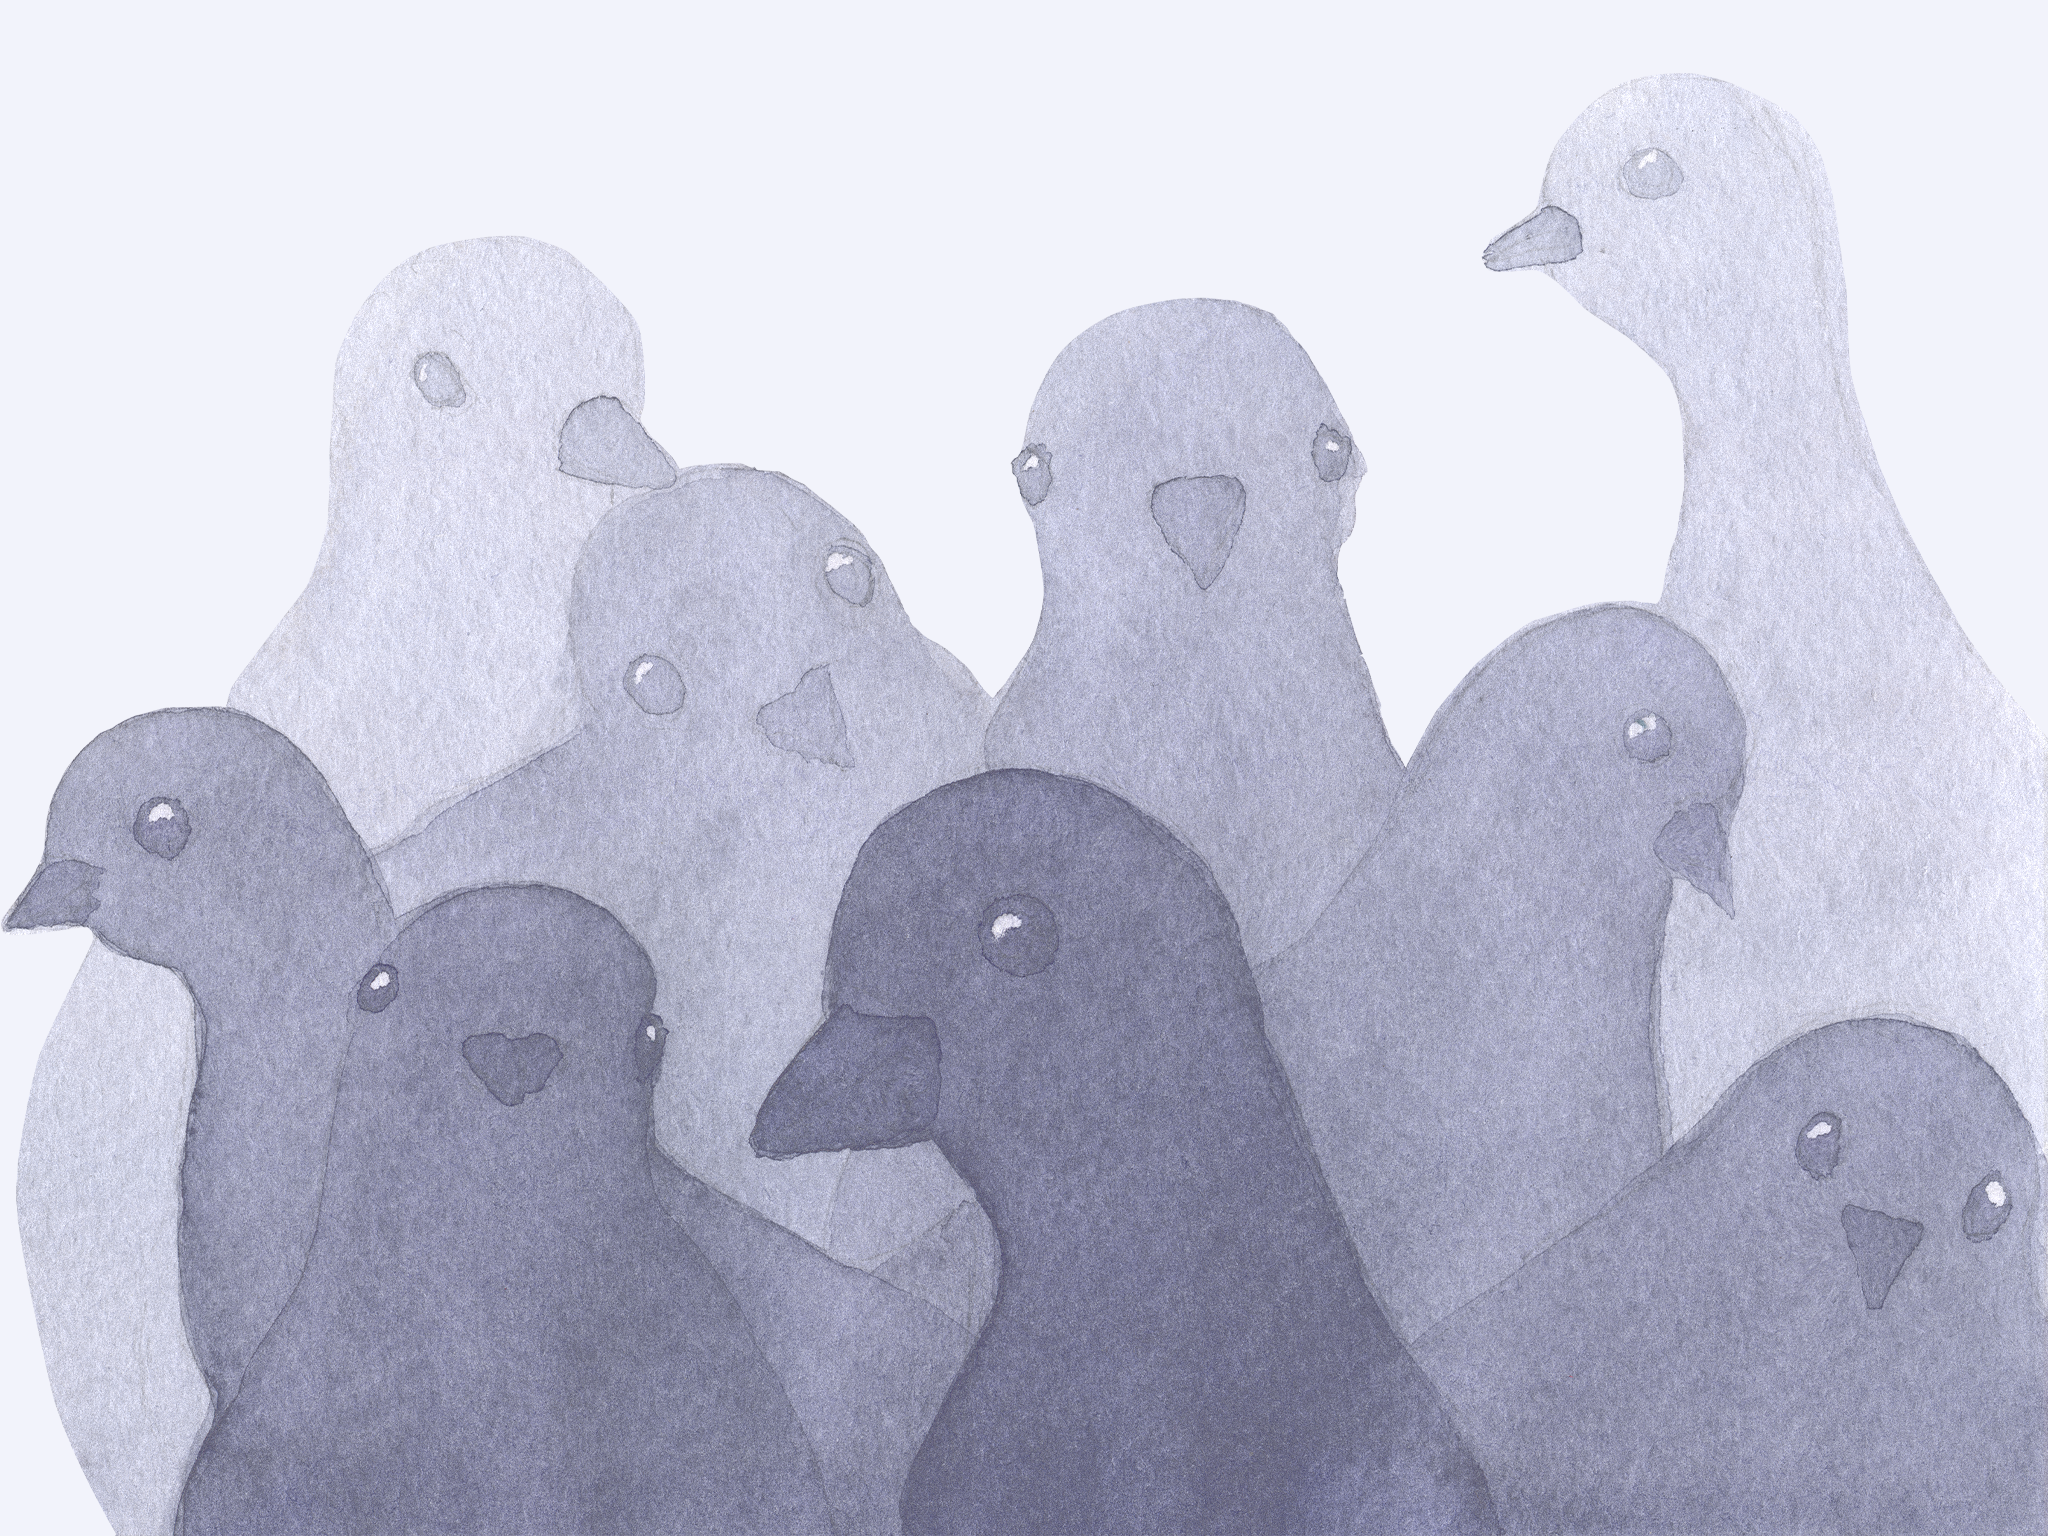 Мы рисуем голубя песня слушать. Pigeon Painting. Голубь хипстер. Pigeon funny Painting. Pigeon Art Wallpaper.